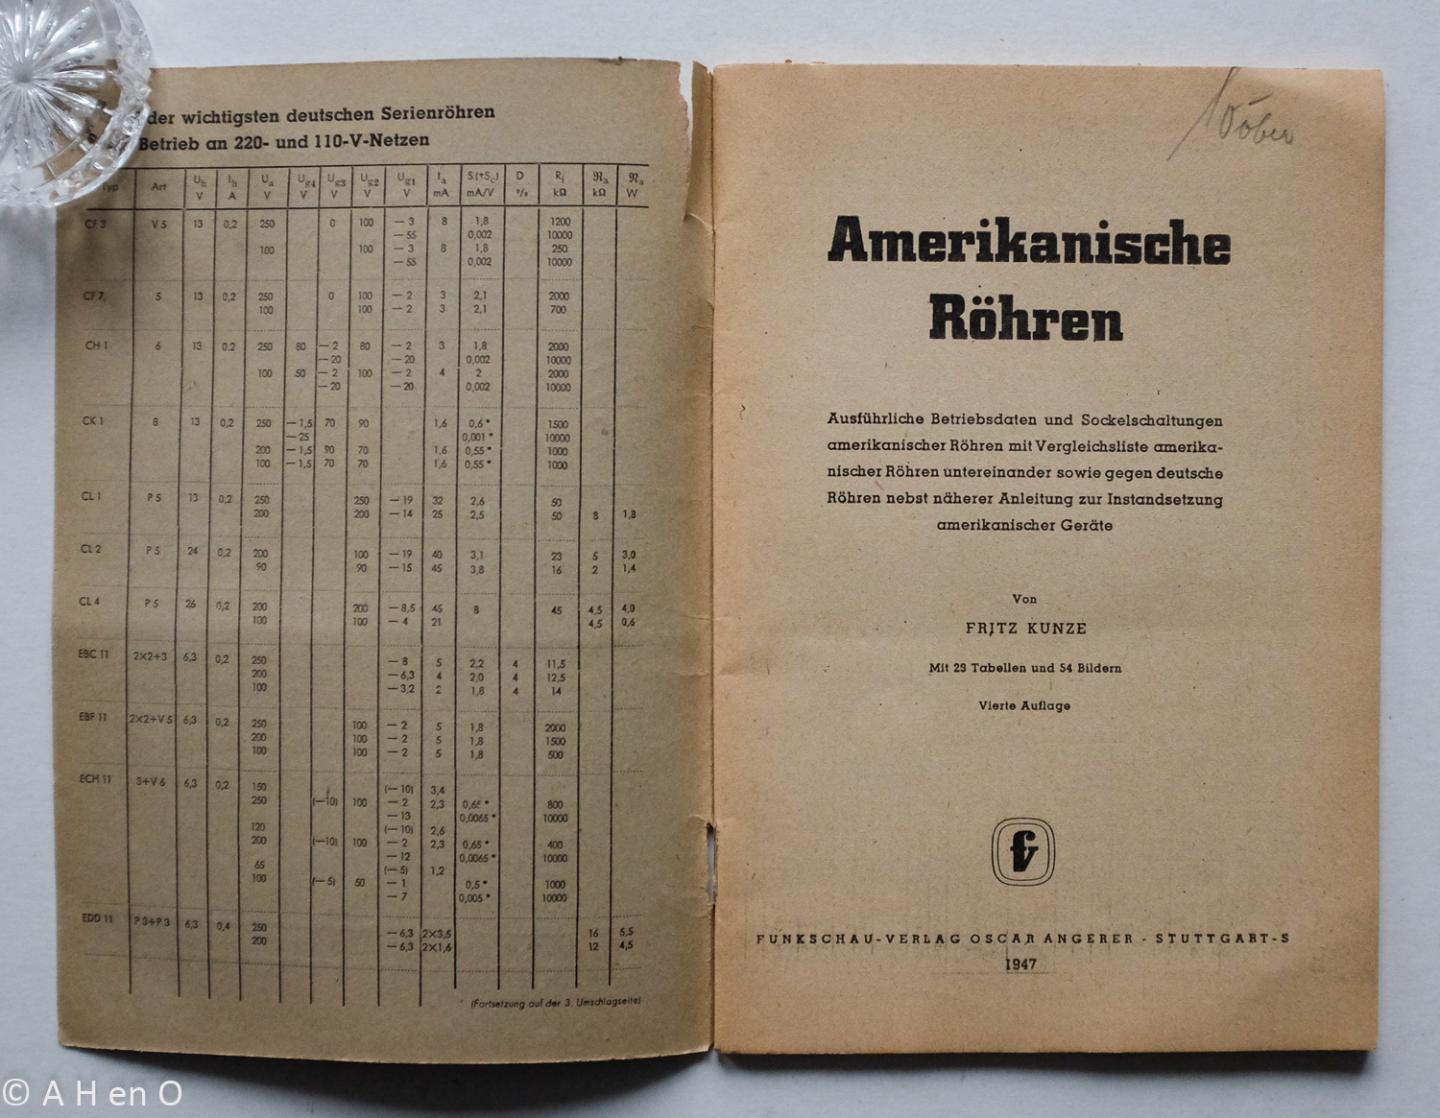 Kunze, Fritz - Amerikanische Röhren : ausführliche Betriebsdaten und Sockelschaltungen amerikanischer Röhren untereinander sowie gegen deutsche Röhren nebst näherer Anleitung zur Instandsetzung amerikanischer Geräte